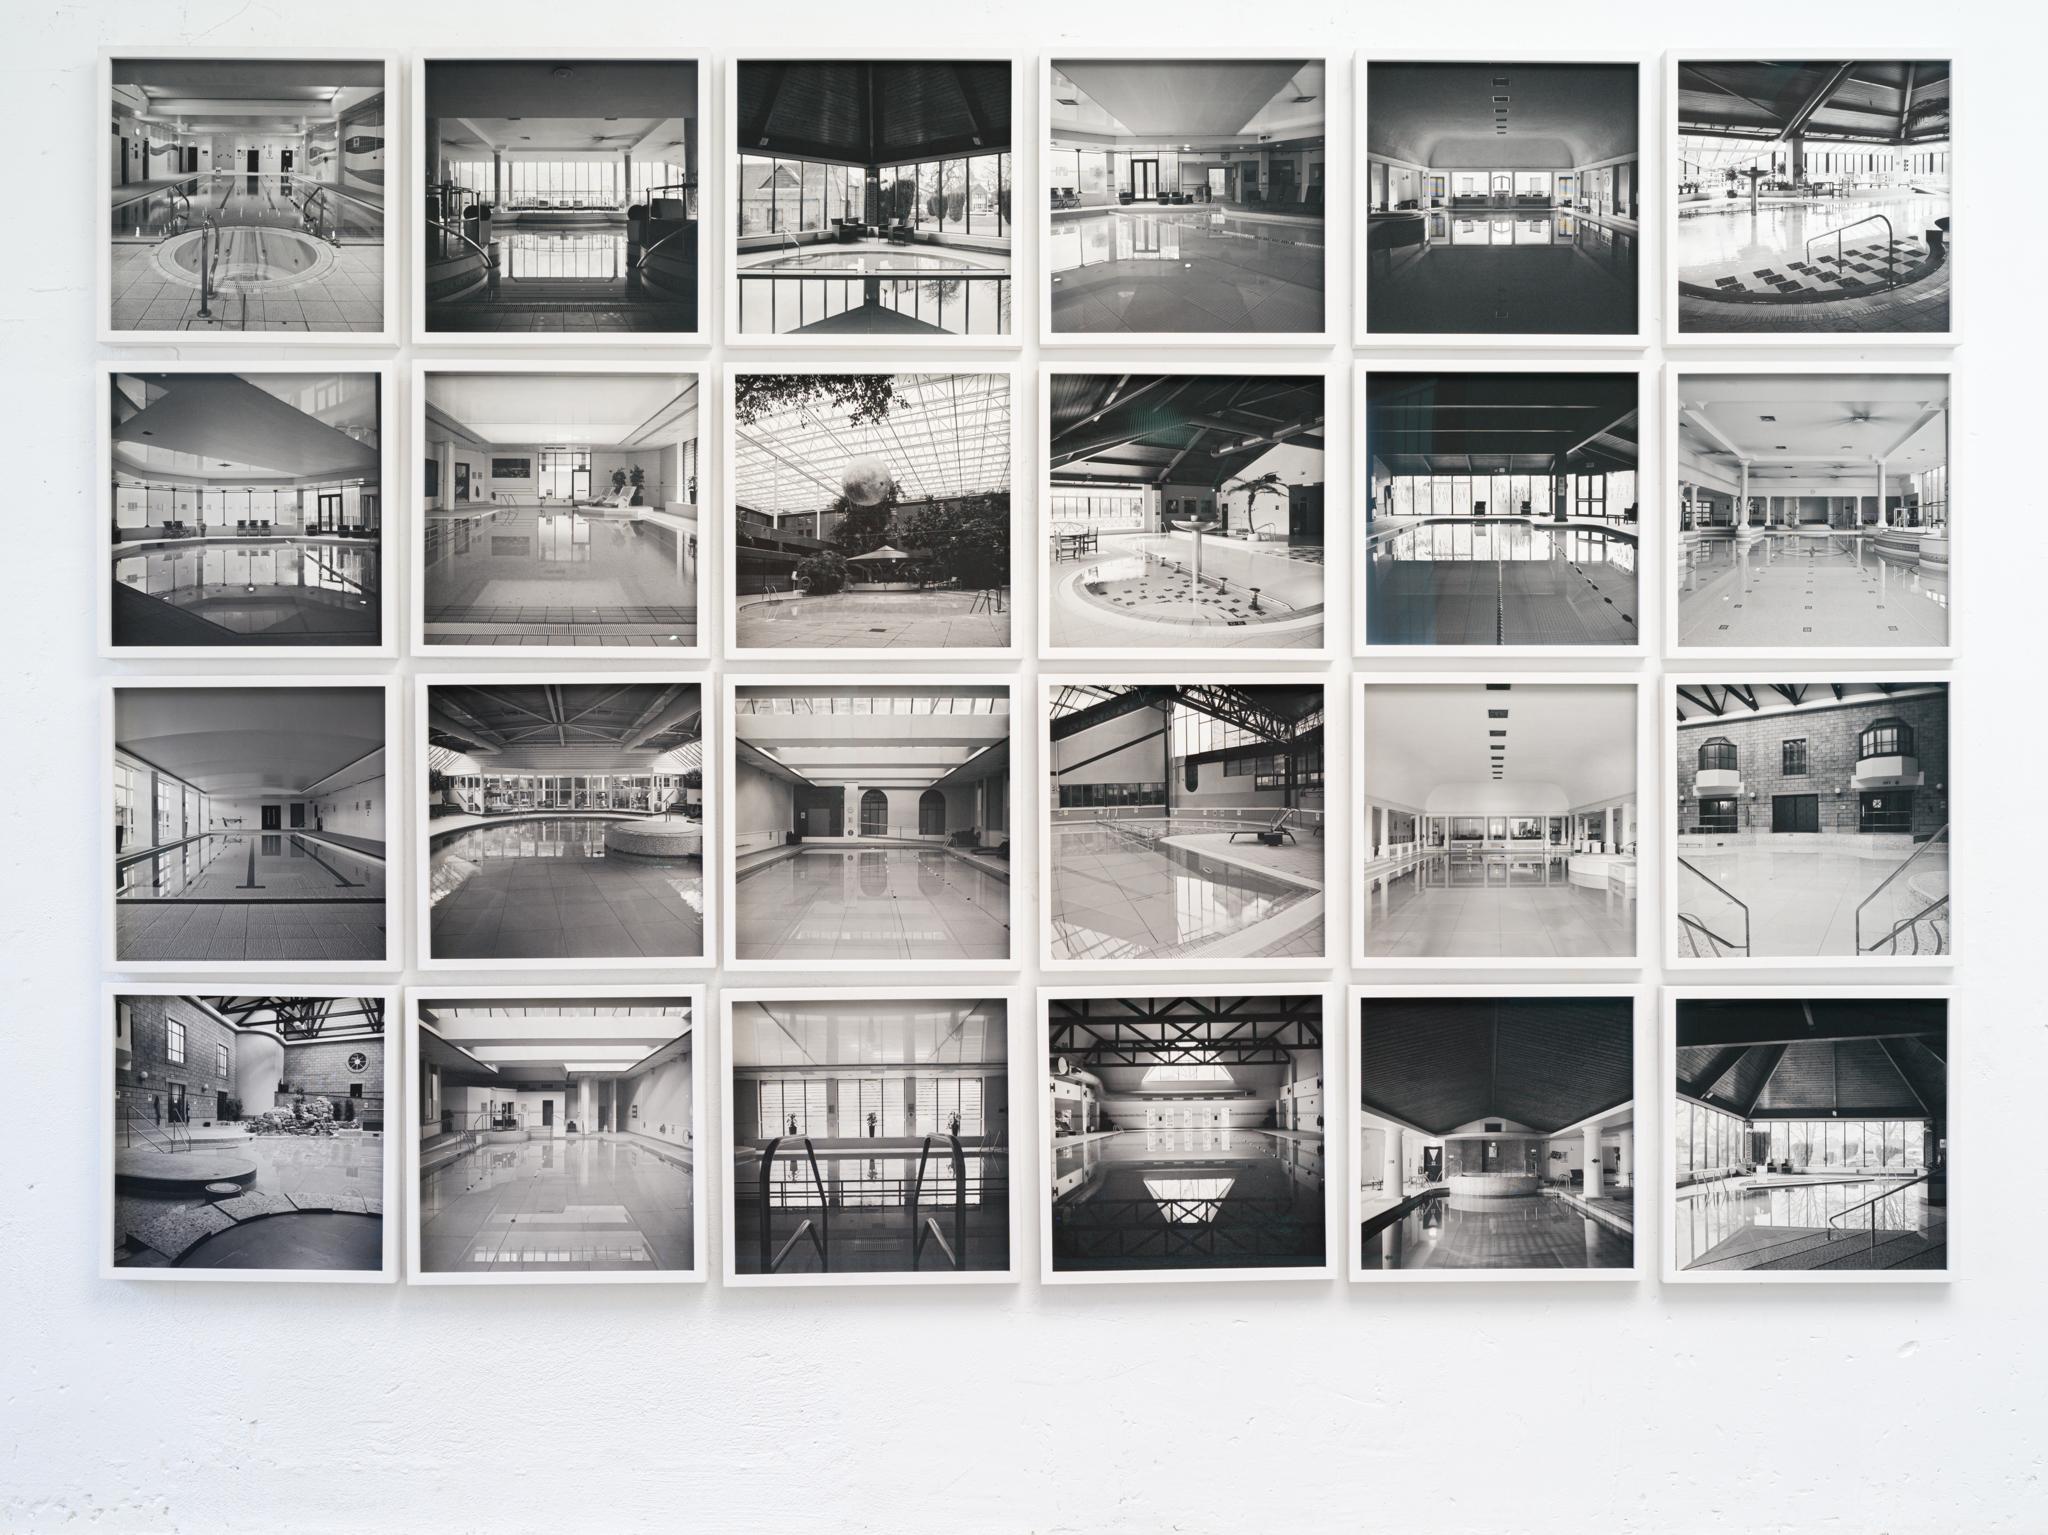 Quadratische Monochrome Quadratische Architekturfotografie: Swimming Pool Design (Grau), Black and White Photograph, von Anna Dobrovolskaya-Mints